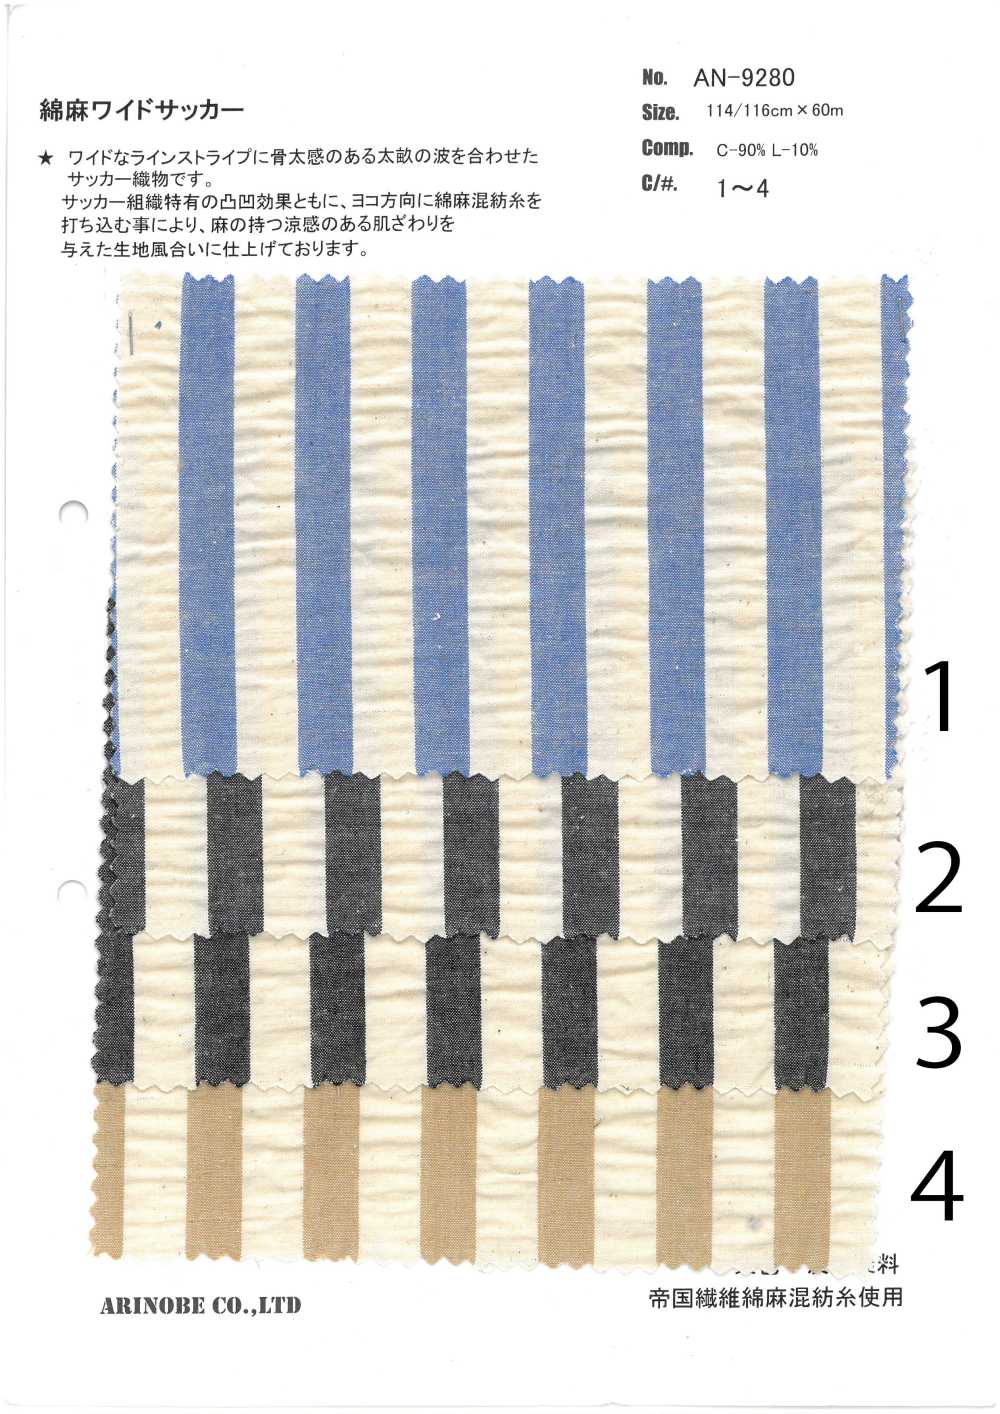 AN-9280 Linen Seersucker Stripes[Textile / Fabric] ARINOBE CO., LTD.